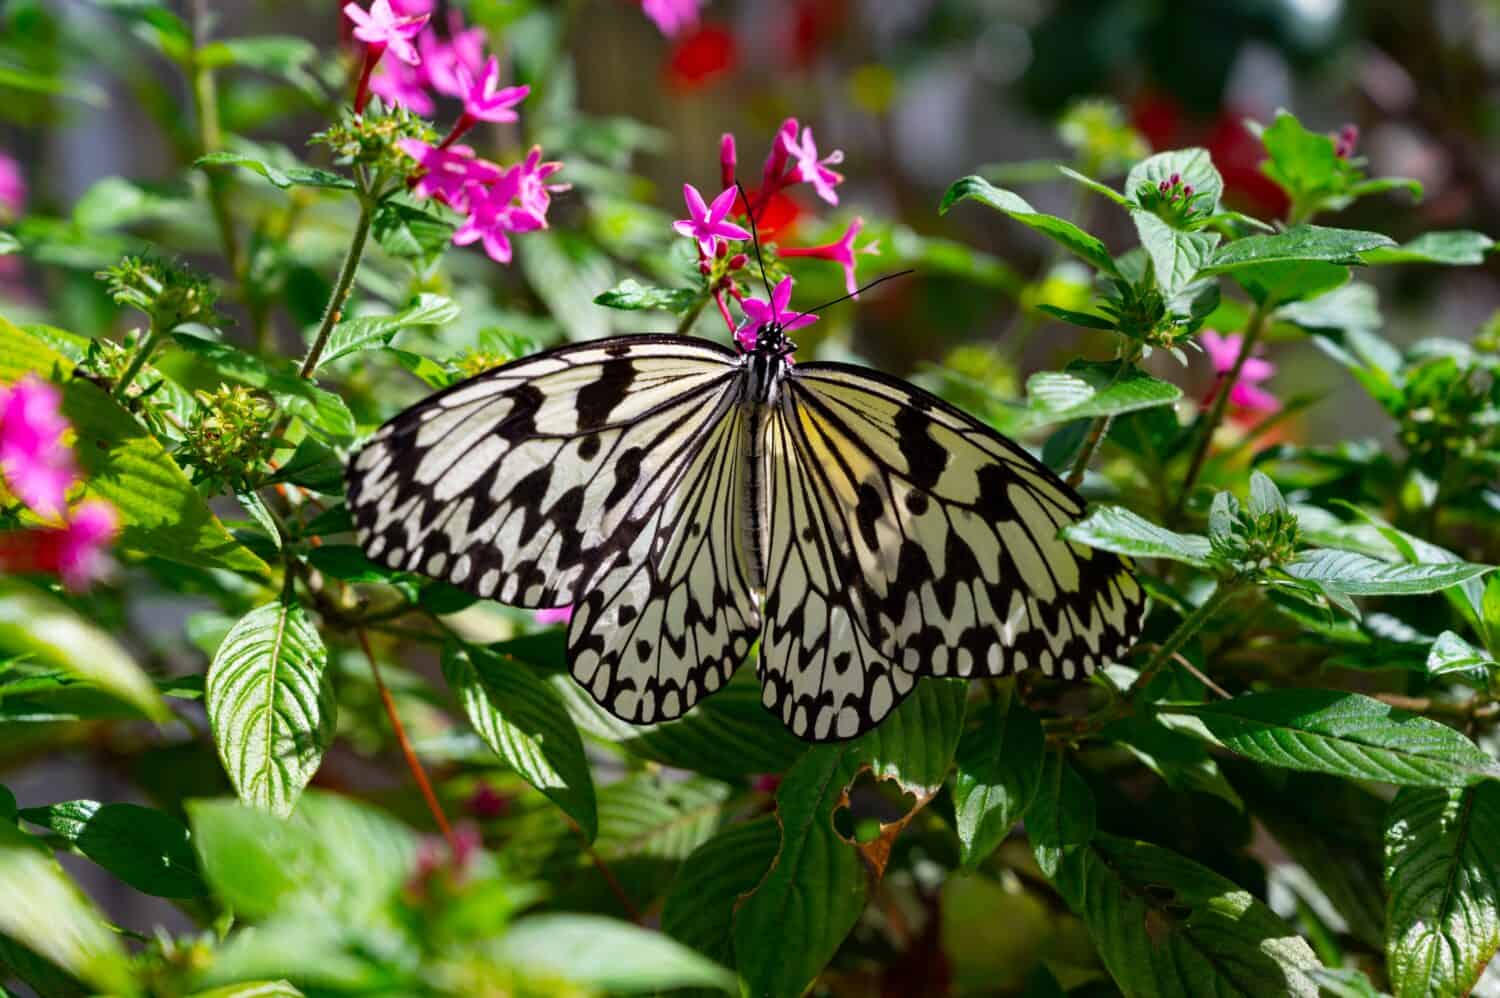 La bella farfalla Malabar Tree-Nymph siede sorseggiando da fiori rosa